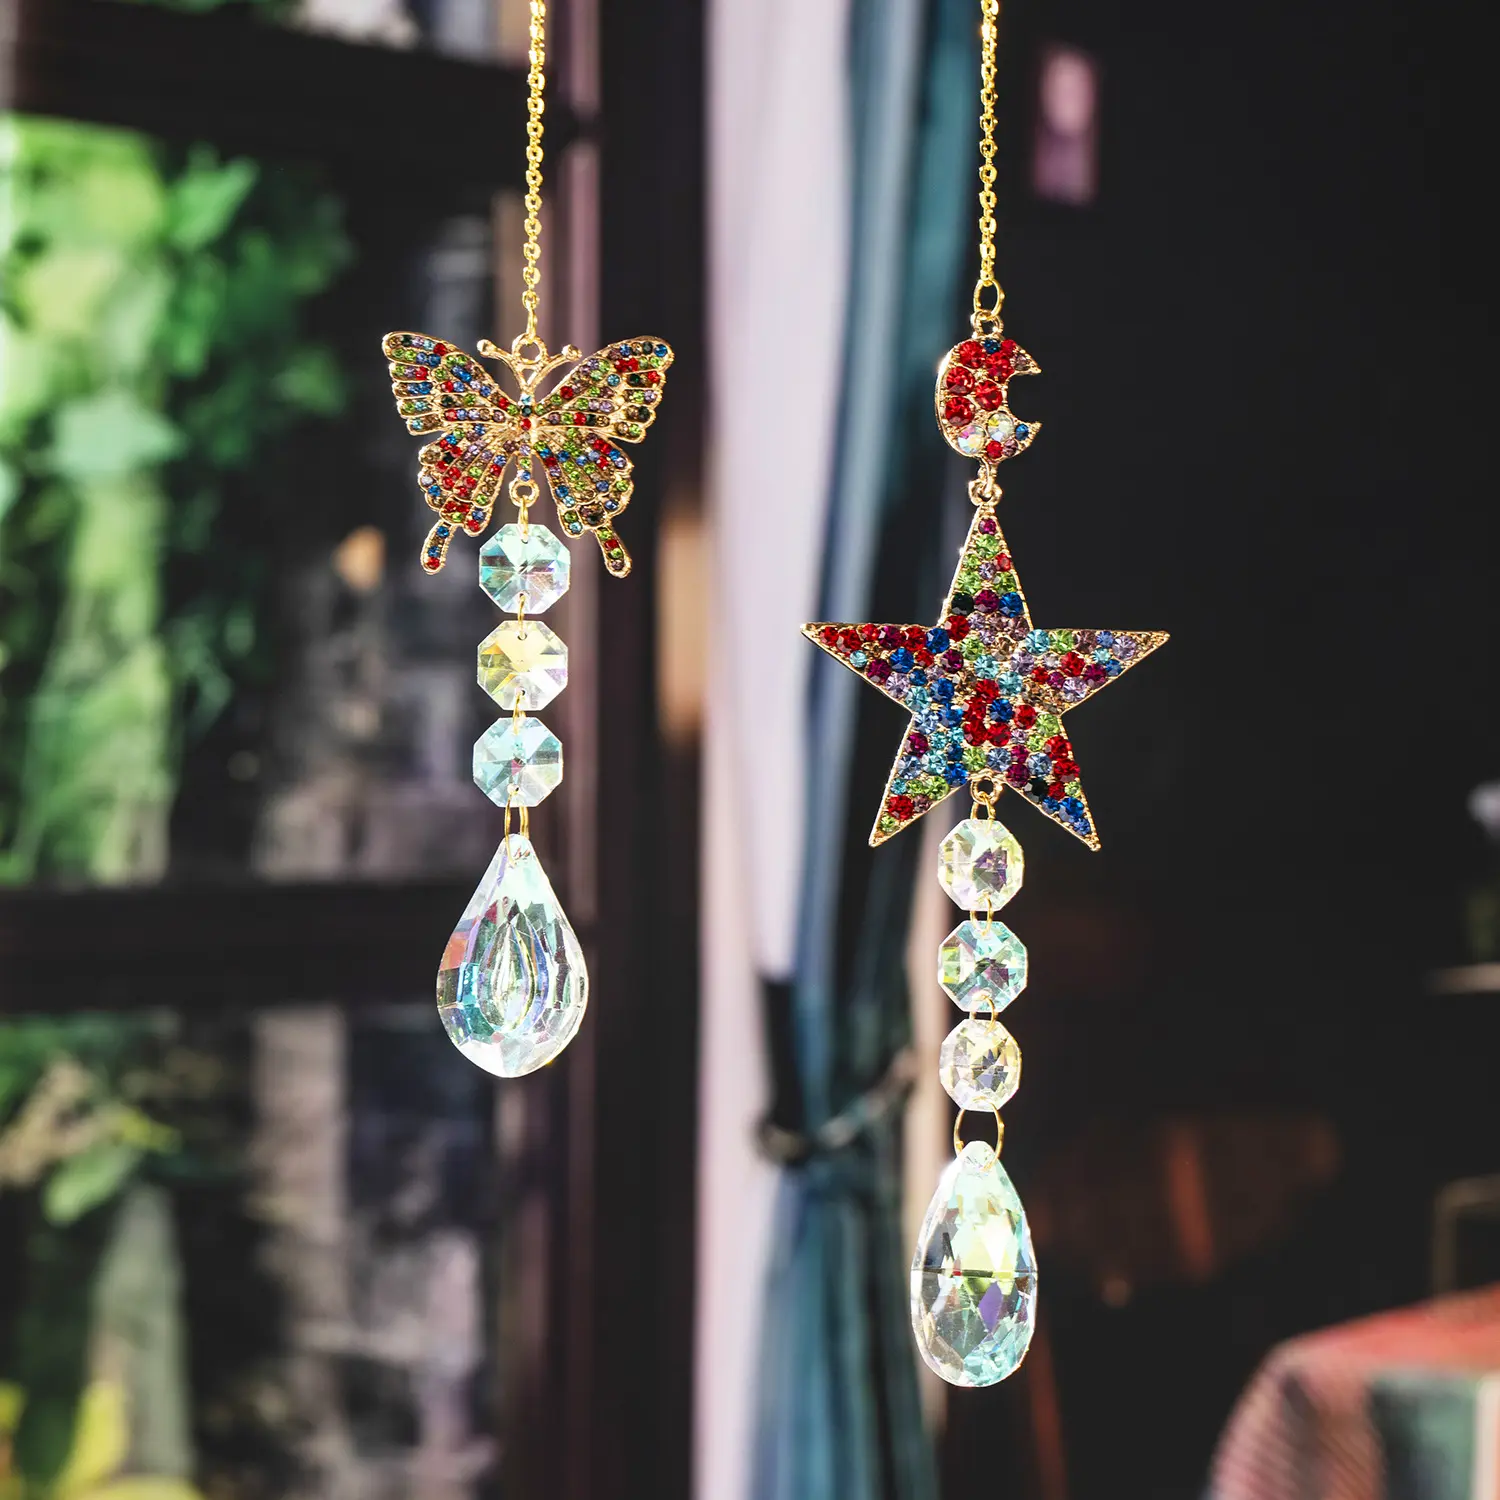 Honor Of Crysal exquisito colgante de gama alta y minimalista diamante coloreado decoración de jardinería colgante de cristal